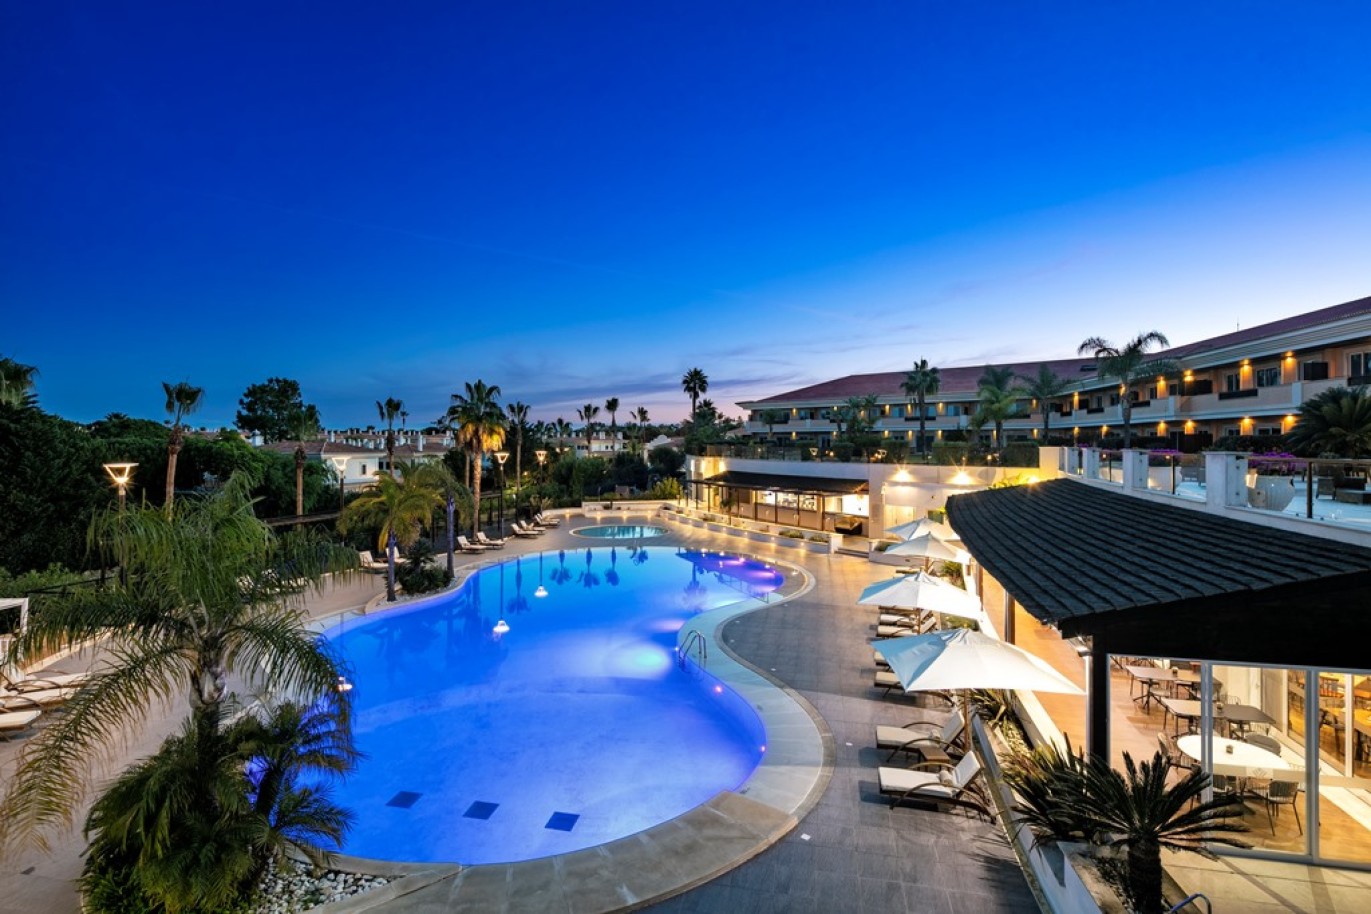 Apartamento, 2 quartos, piscina, para venda na Quinta do Lago, Algarve_262199